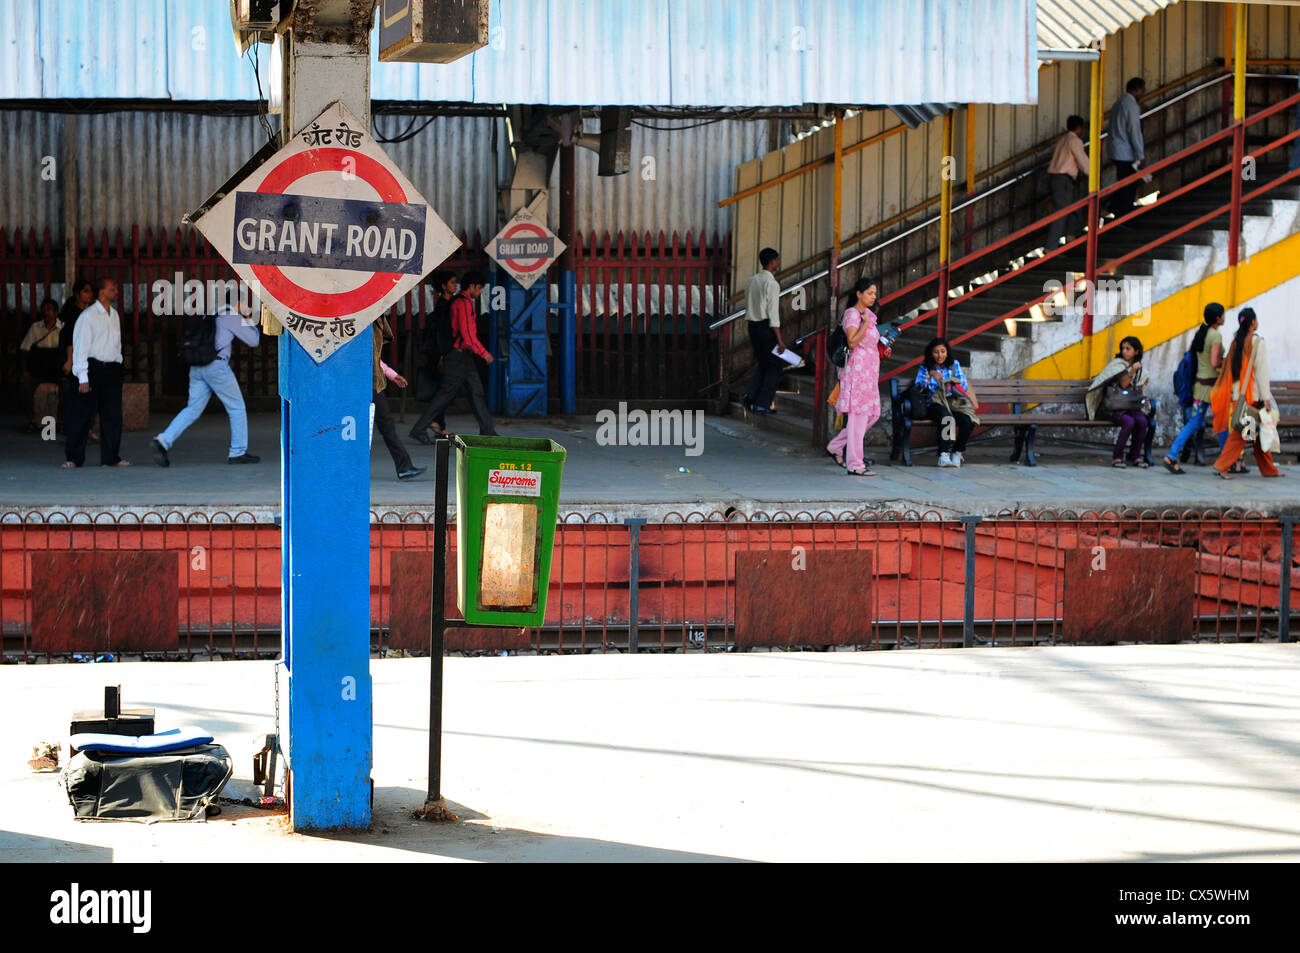 Grant Road train station, Mumbai, India Stock Photo